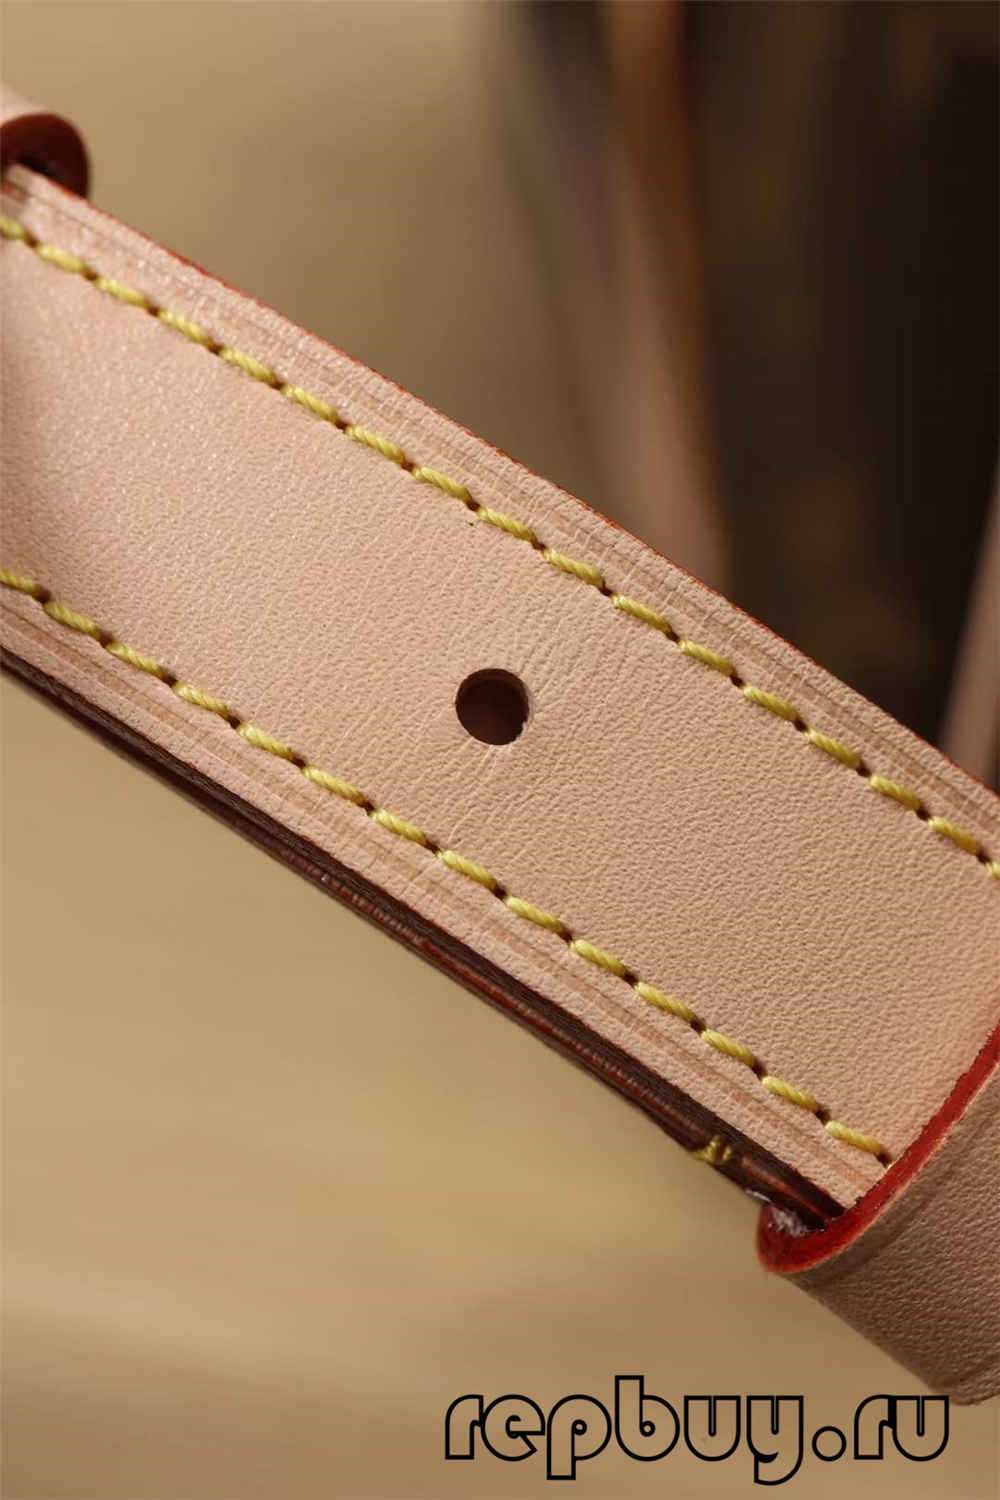 ಅತ್ಯುತ್ತಮ ಗುಣಮಟ್ಟದ ಲೂಯಿ ವಿಟಾನ್ ಸ್ಪೀಡಿ 25 ಬ್ಯಾಗ್ ಪ್ರತಿಕೃತಿ ಆನ್‌ಲೈನ್ ಶಾಪಿಂಗ್ (2022 ನವೀಕರಿಸಲಾಗಿದೆ)-Best Quality Fake Louis Vuitton Bag Online Store, Replica designer bag ru